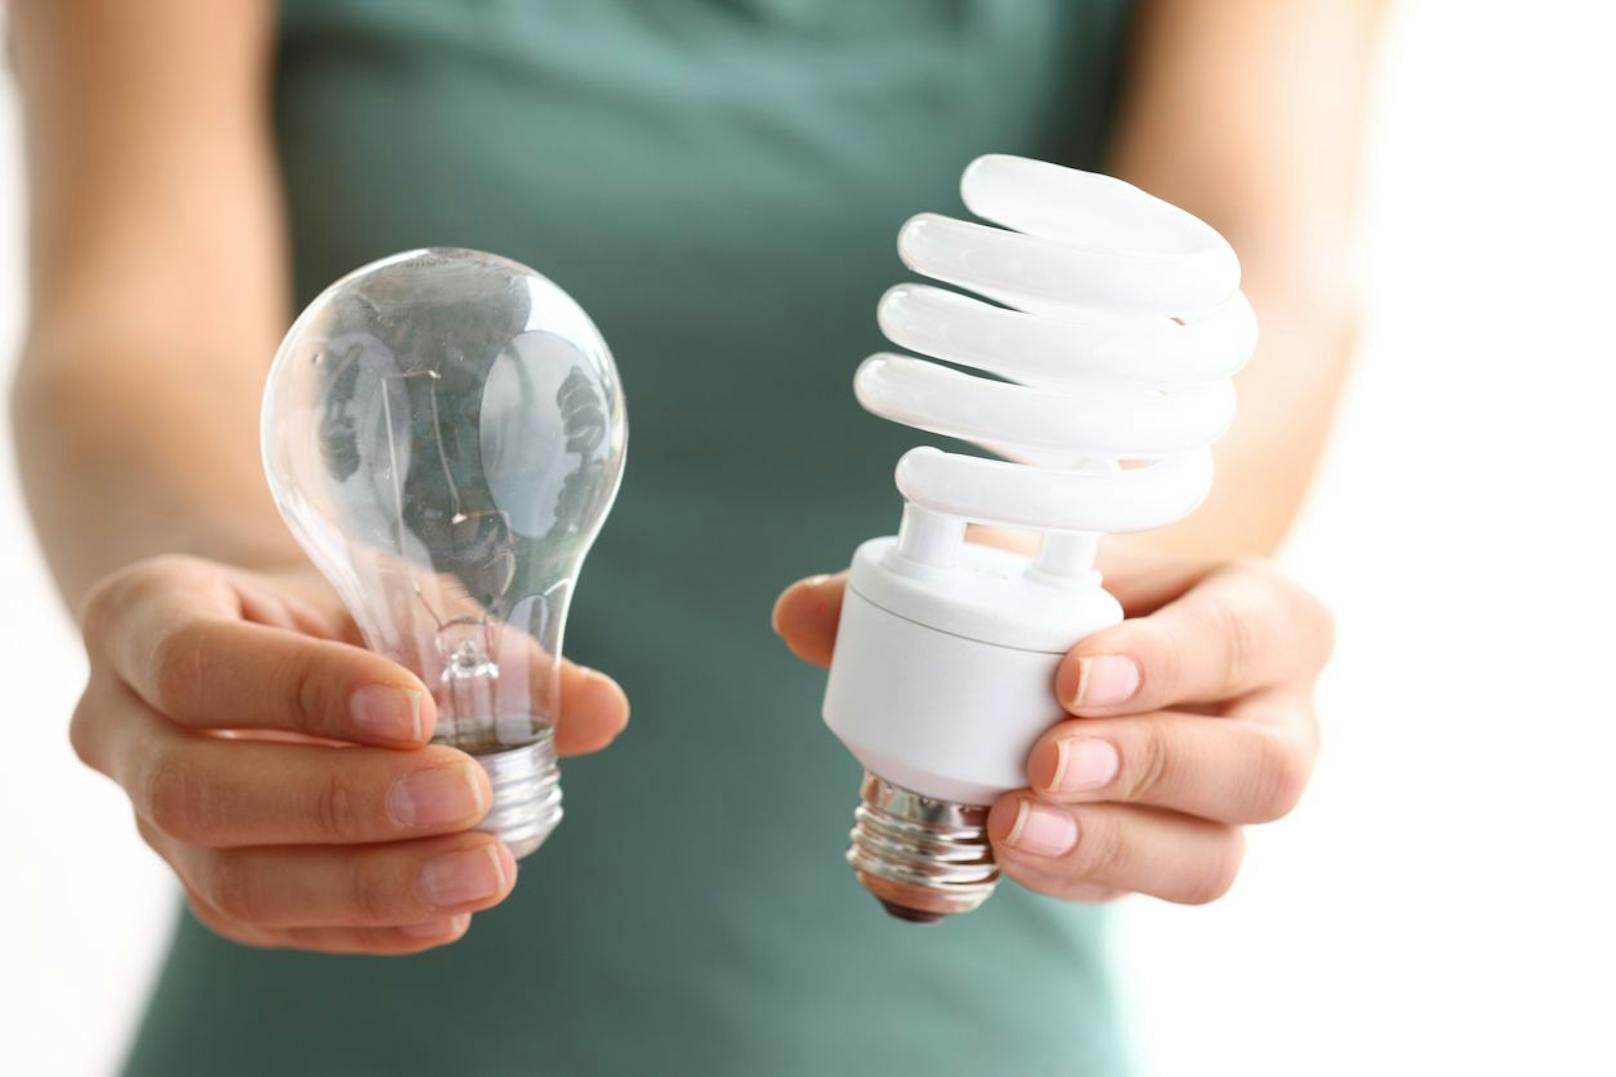 Zu Hause solltest du langsam aber sicher deine Glühbirnen gegen Energiesparlampen austauschen. Auch die Steckdosenleiste gehört ausgeschaltet, wenn sie nicht in Gebrauch ist. 